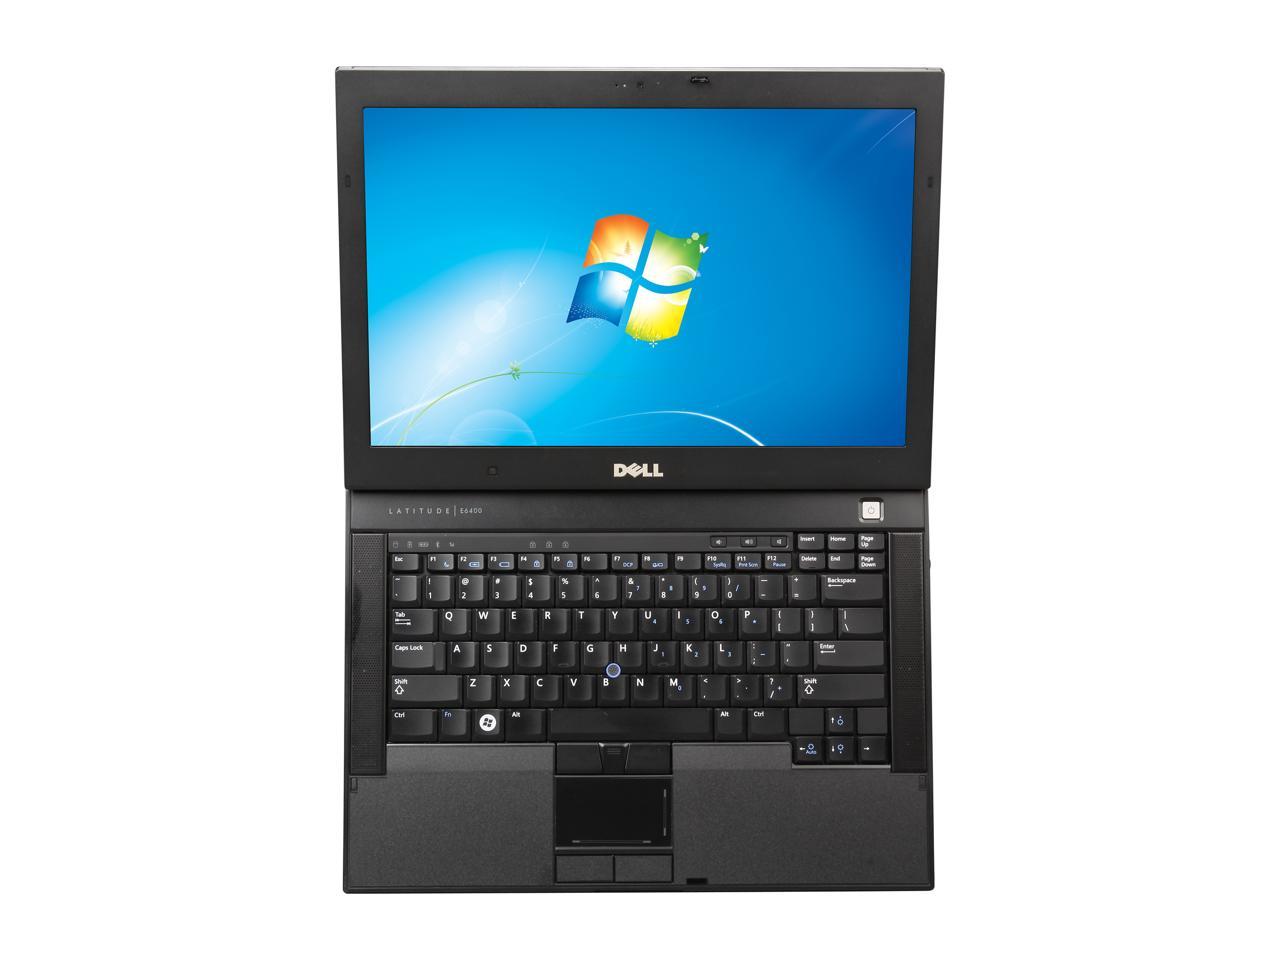 Refurbished: DELL Laptop Latitude E6400 Intel Core 2 Duo 2.53 GHz 4 GB